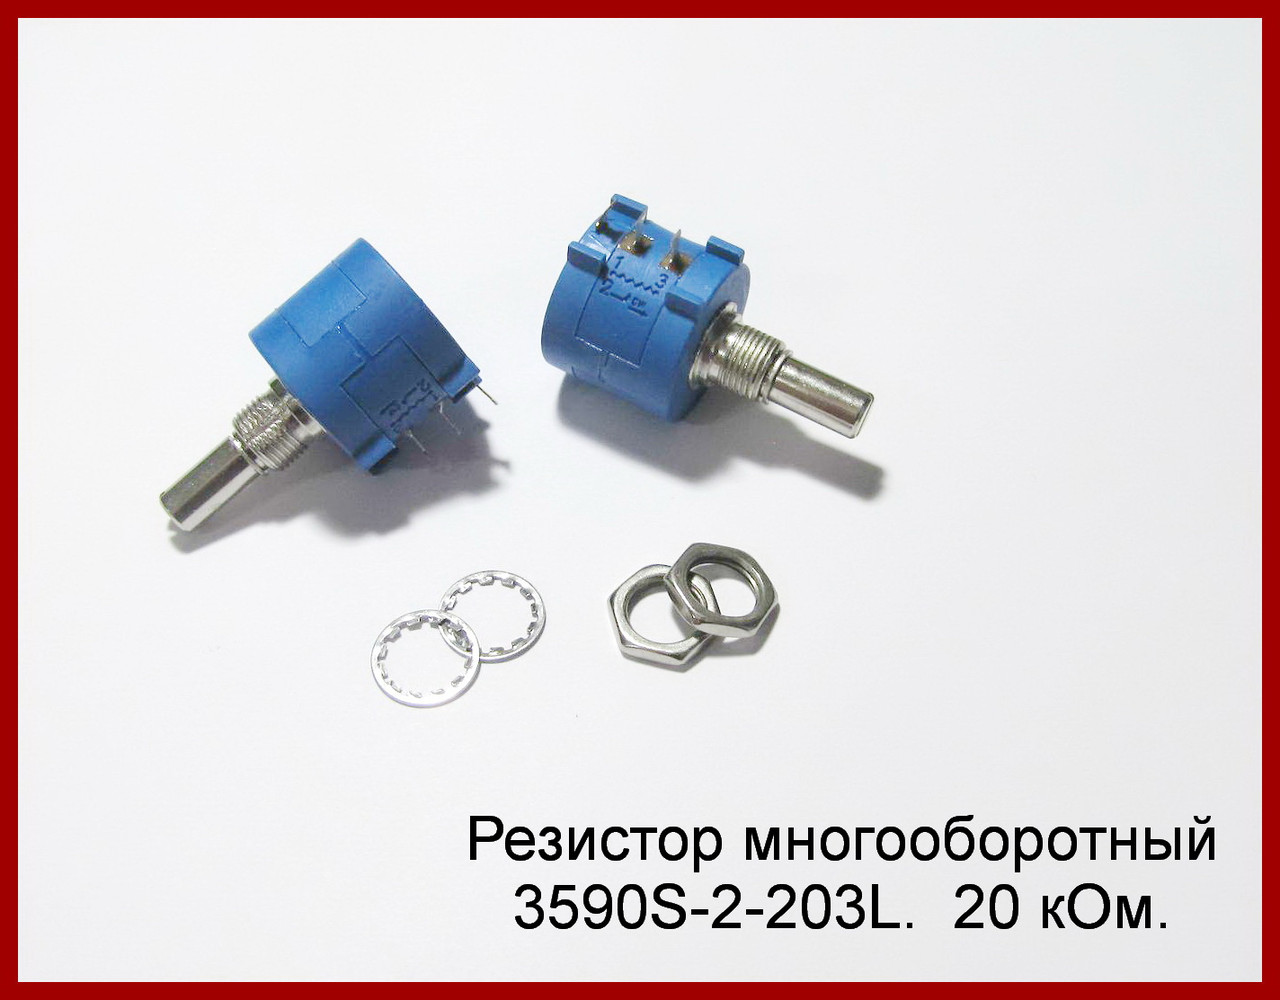 Резистор багатообертовий 3590S-2-203L, 20 kom.